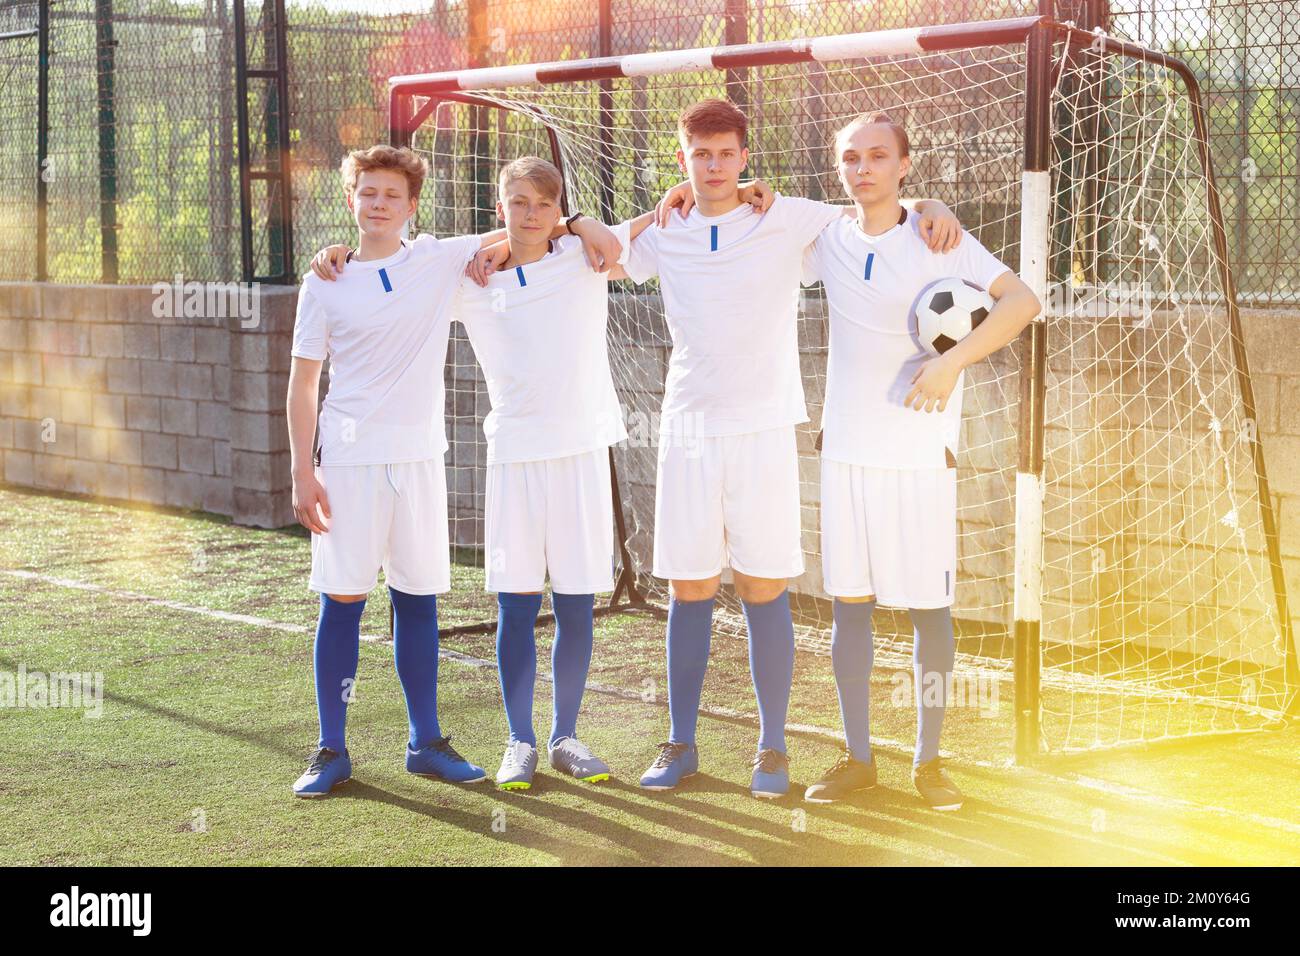 Porträt der männlichen High School Fußballmannschaft auf dem Feld Stockfoto